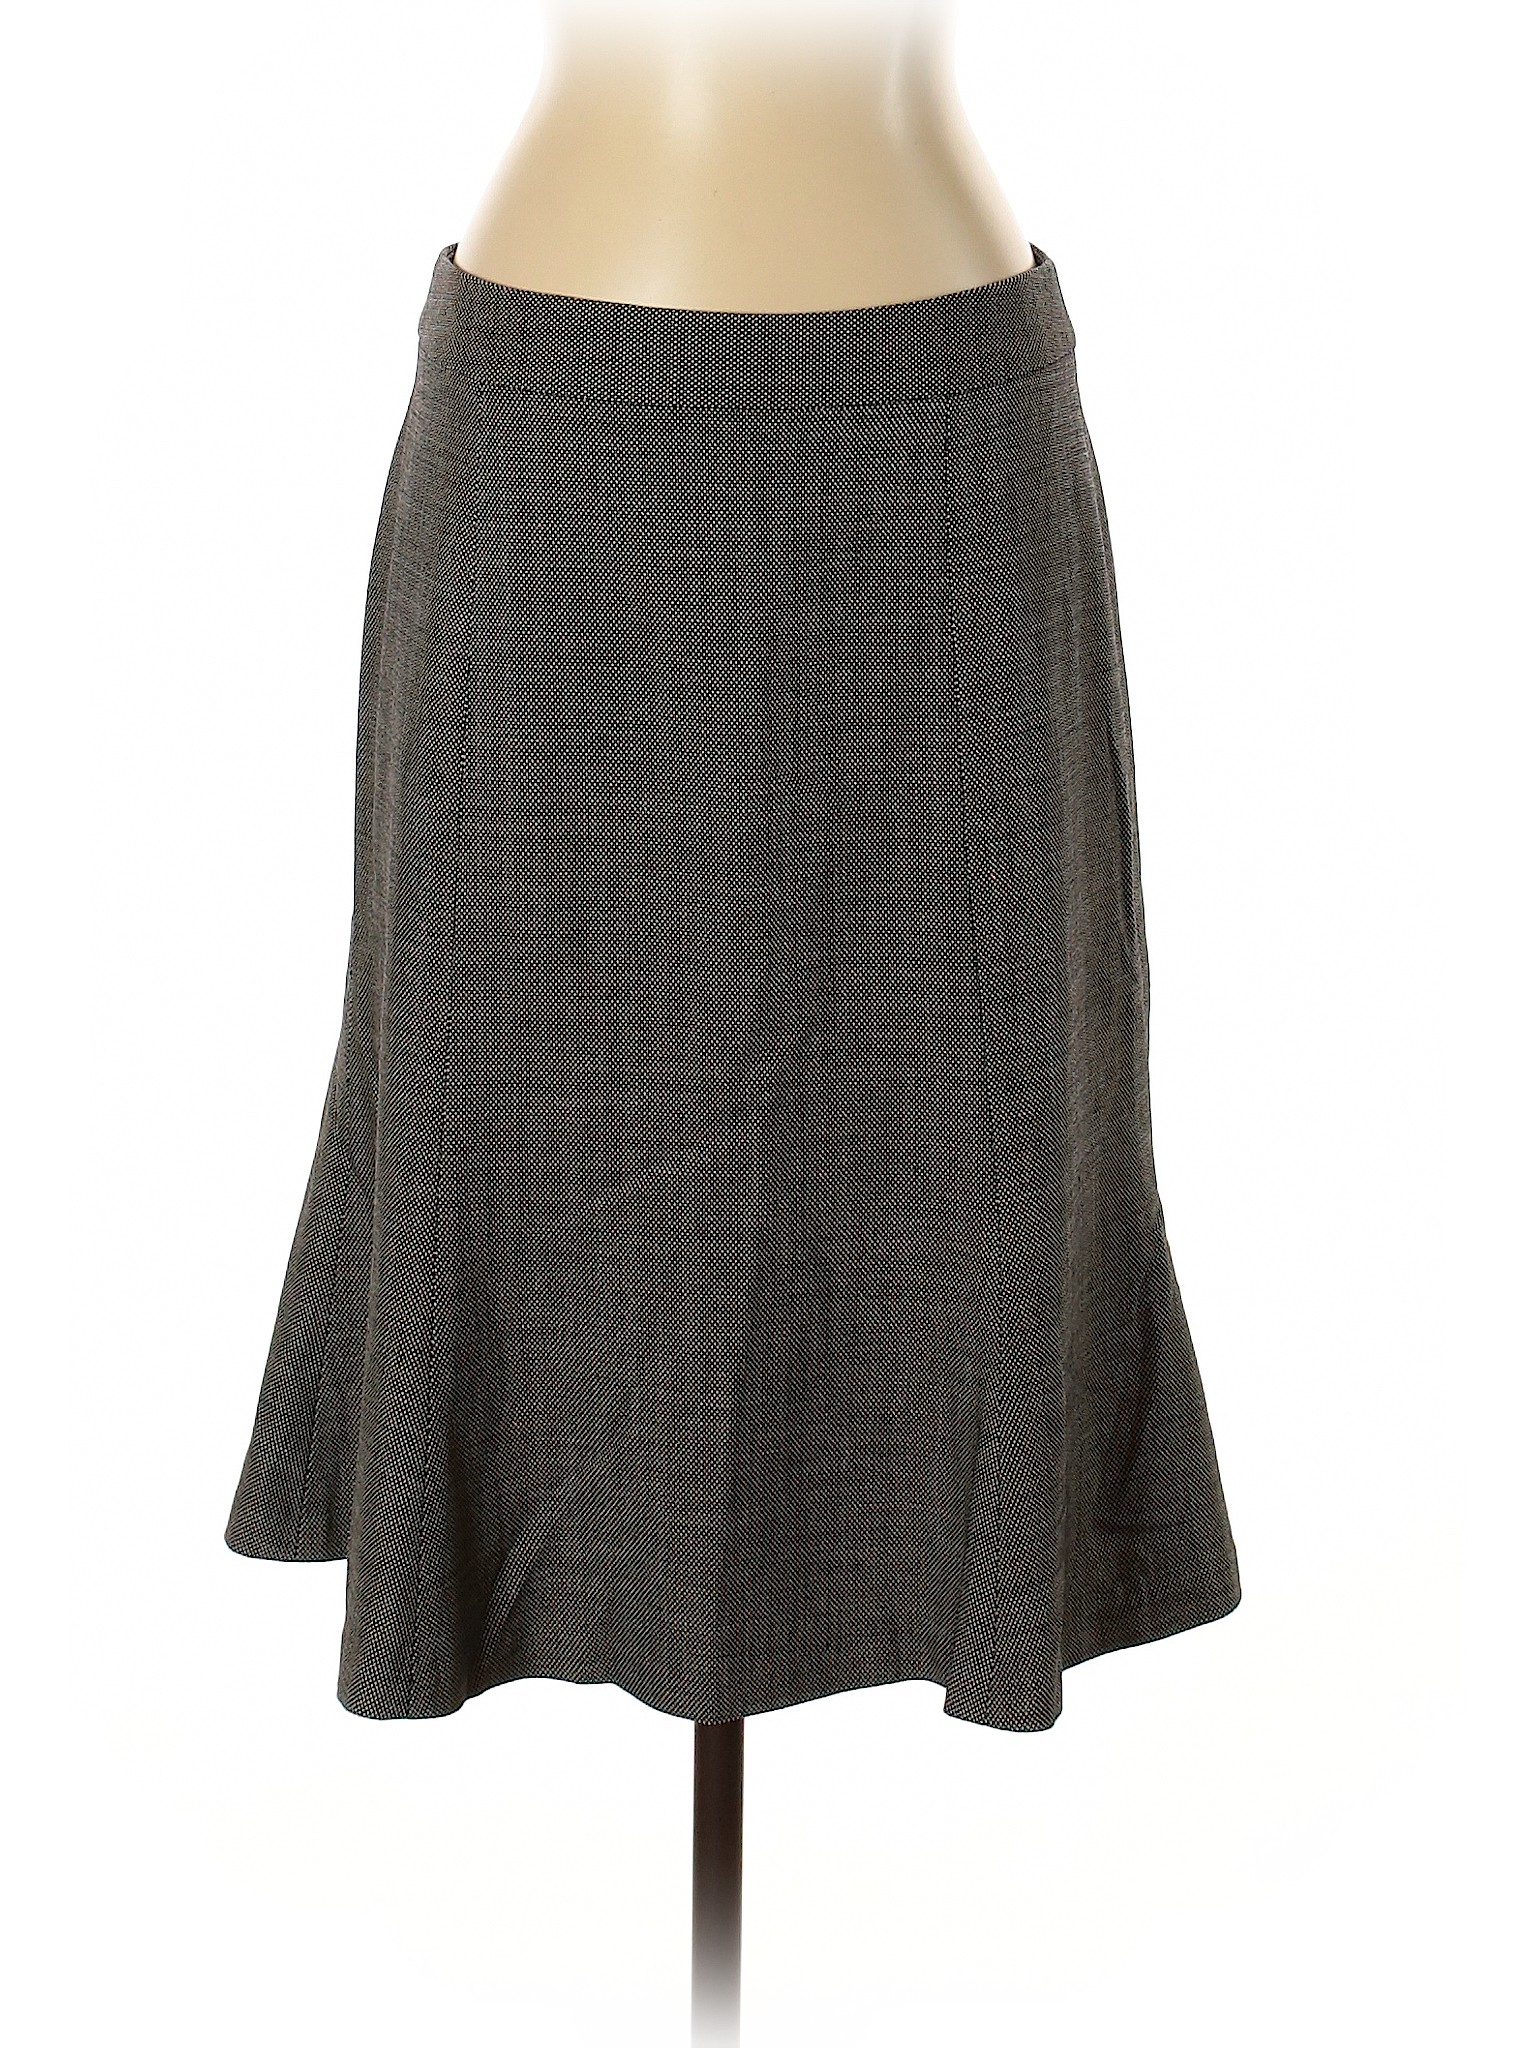 Banana Republic Women Gray Wool Skirt 4 | eBay